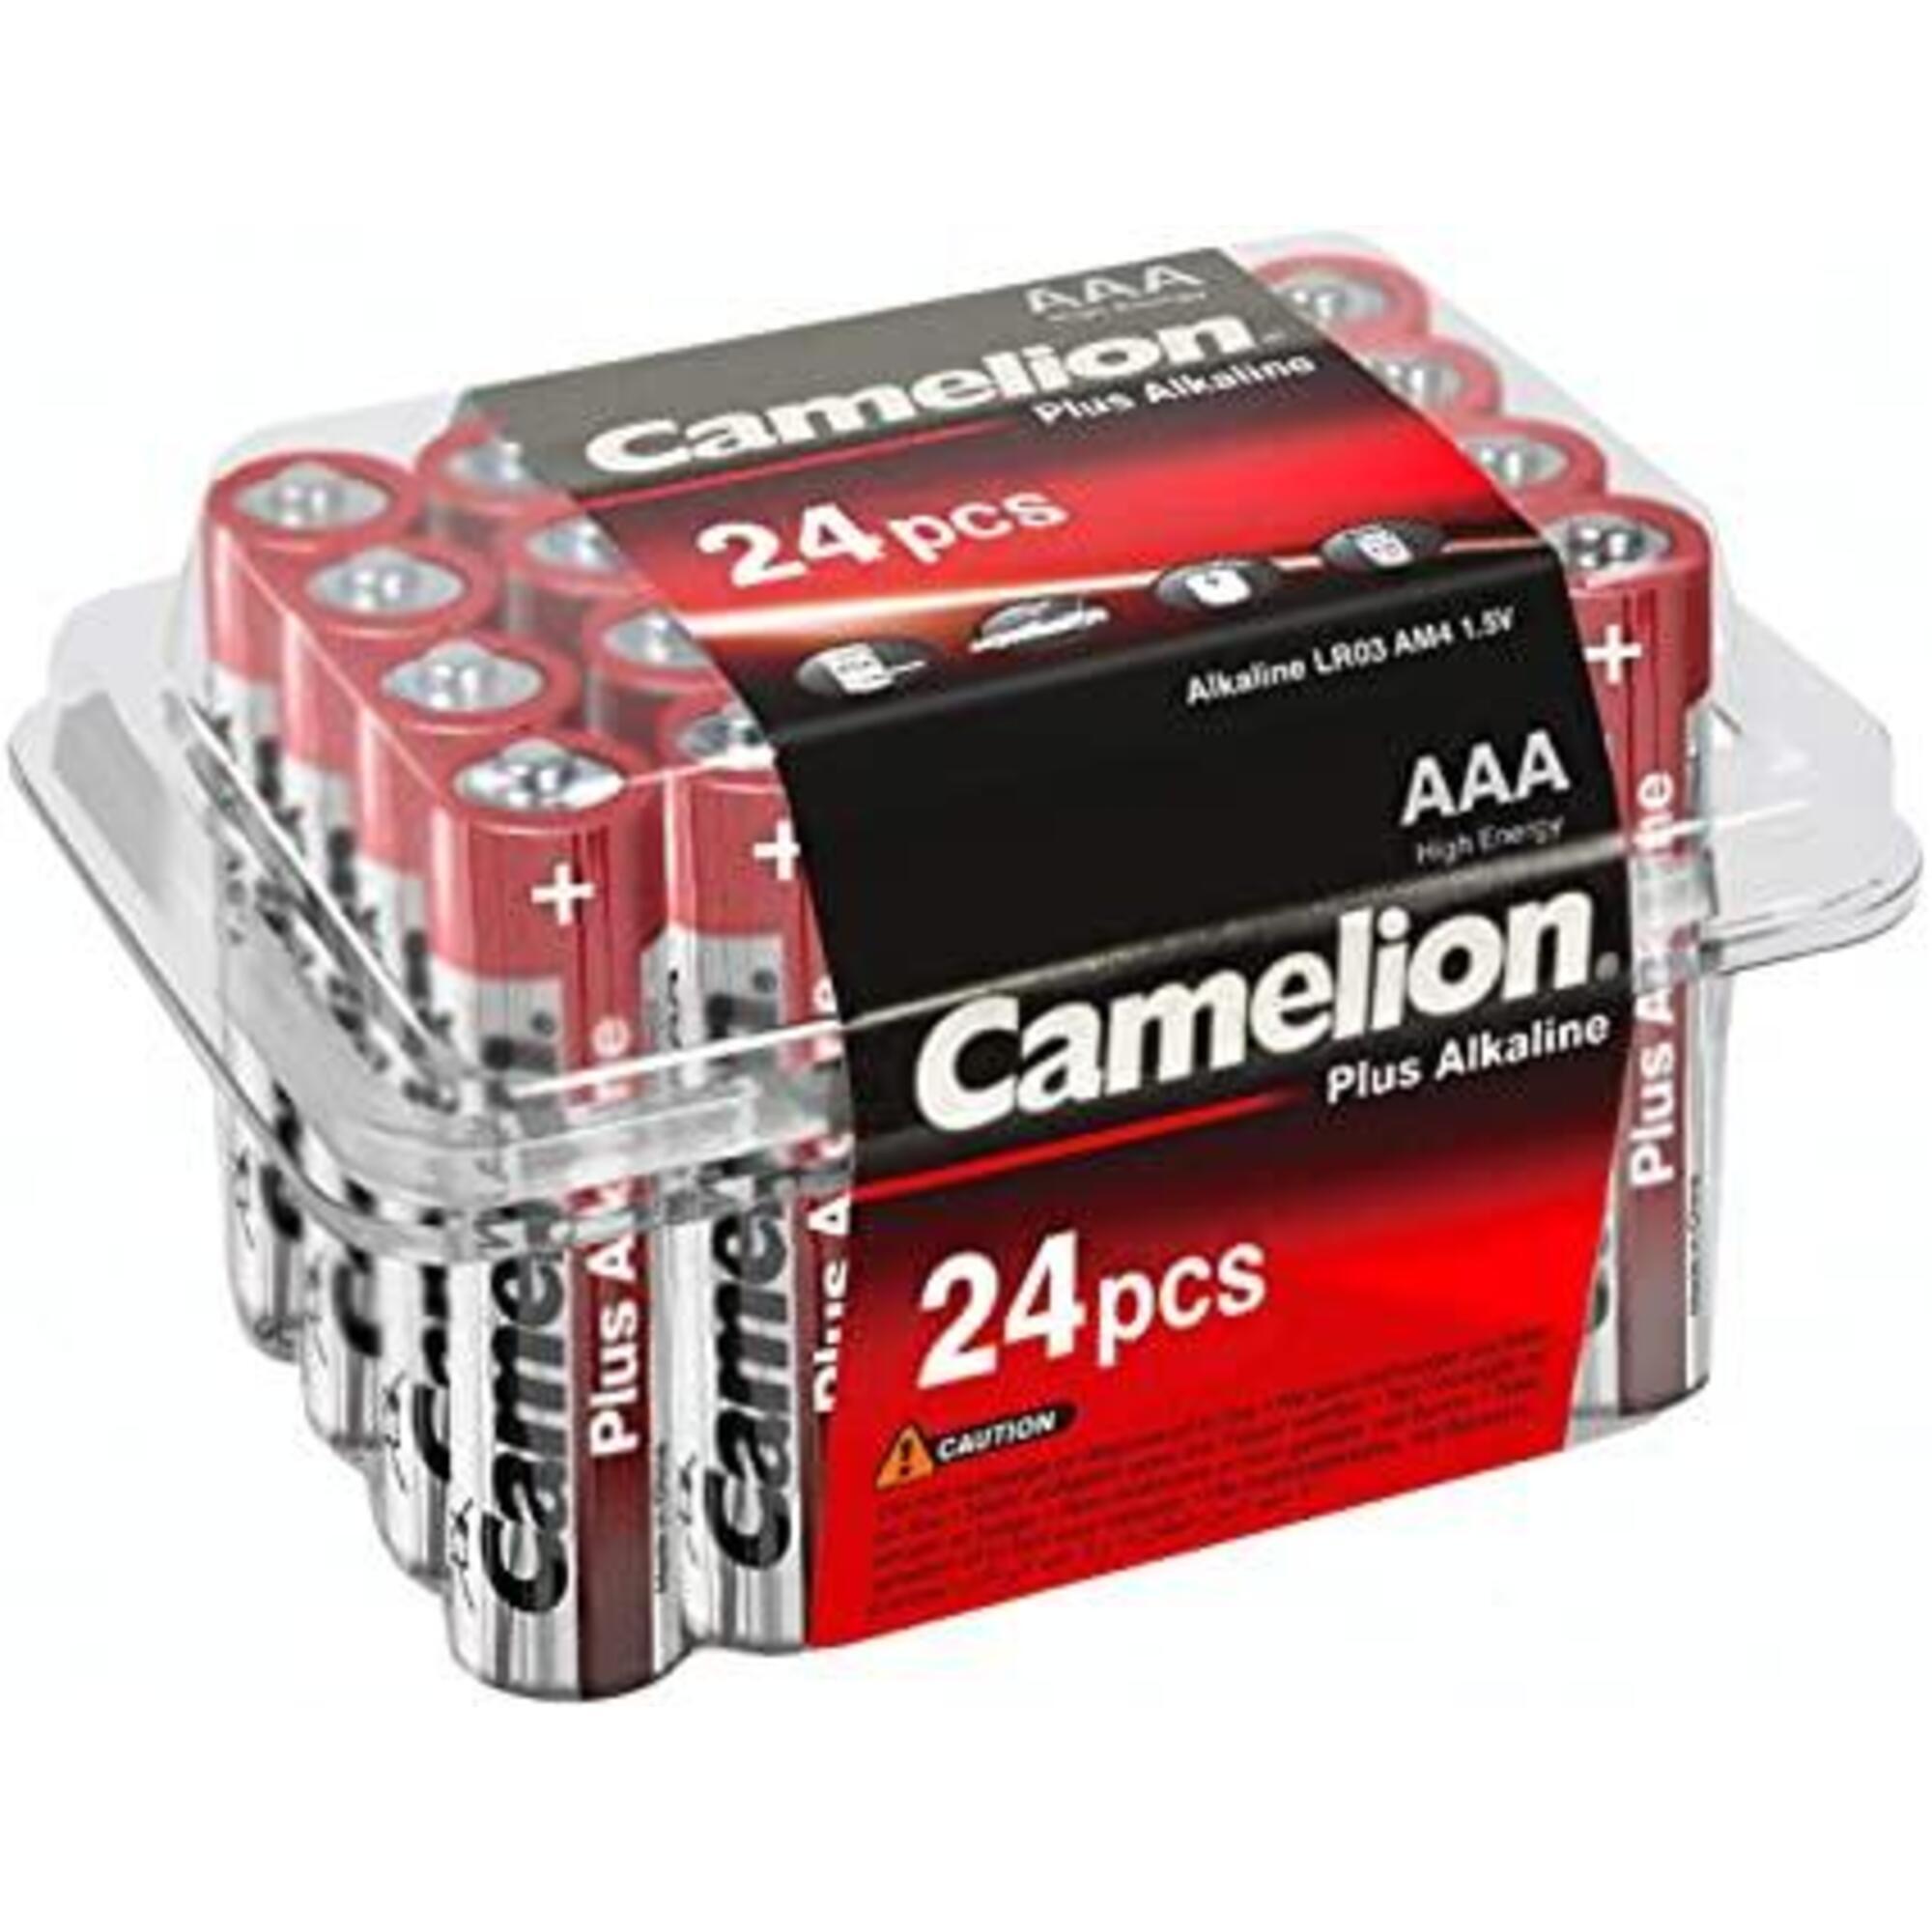 Camelion plus alkaline aaa/lr03 batterij box 24 stuks